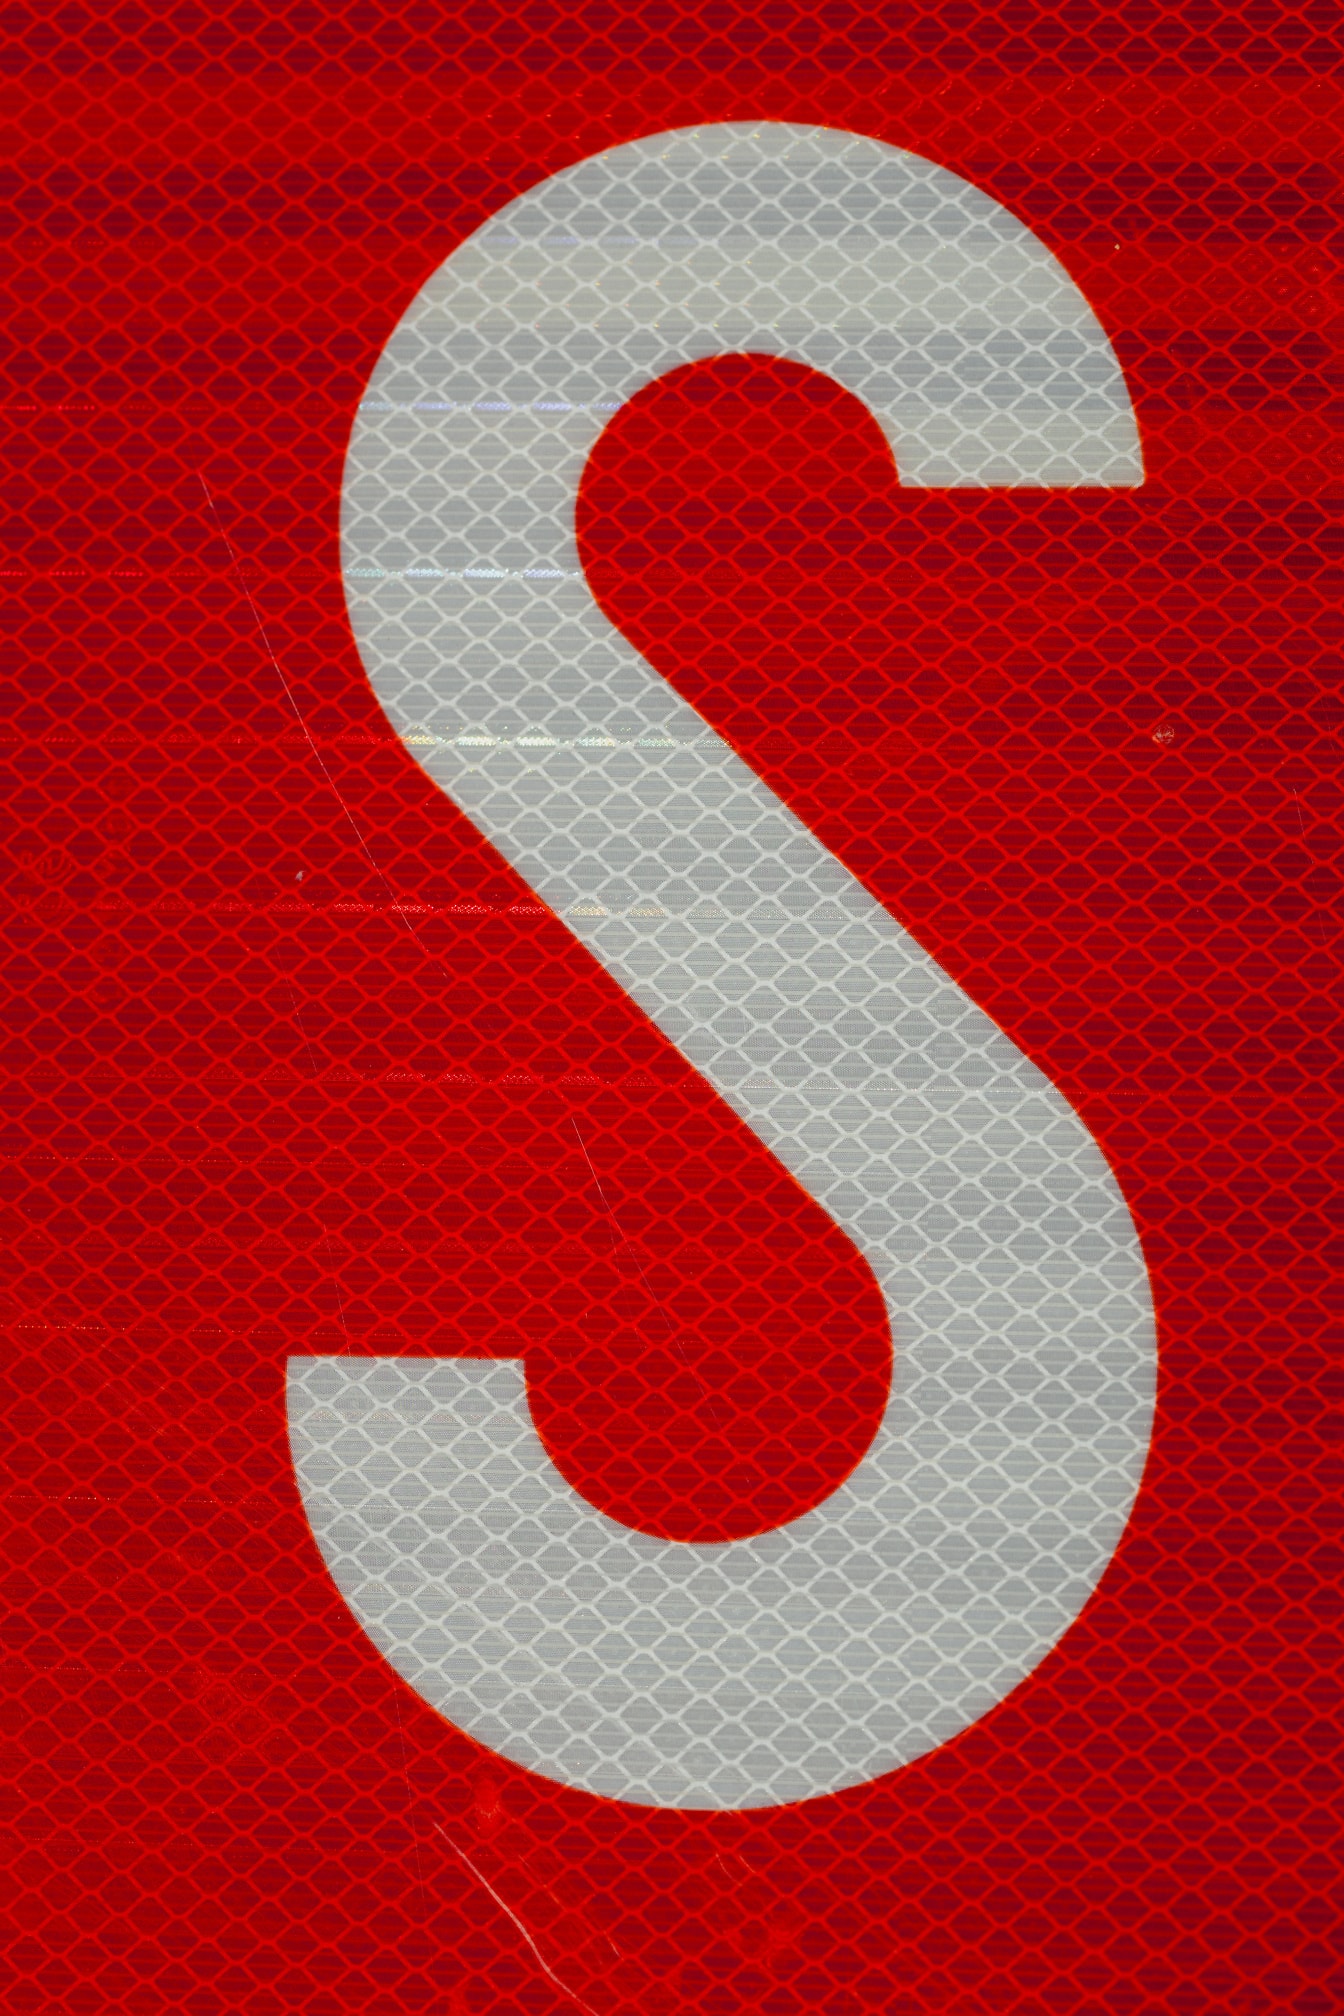 Λευκό σύμβολο S σε σκούρο κόκκινο φθορίζον φόντο